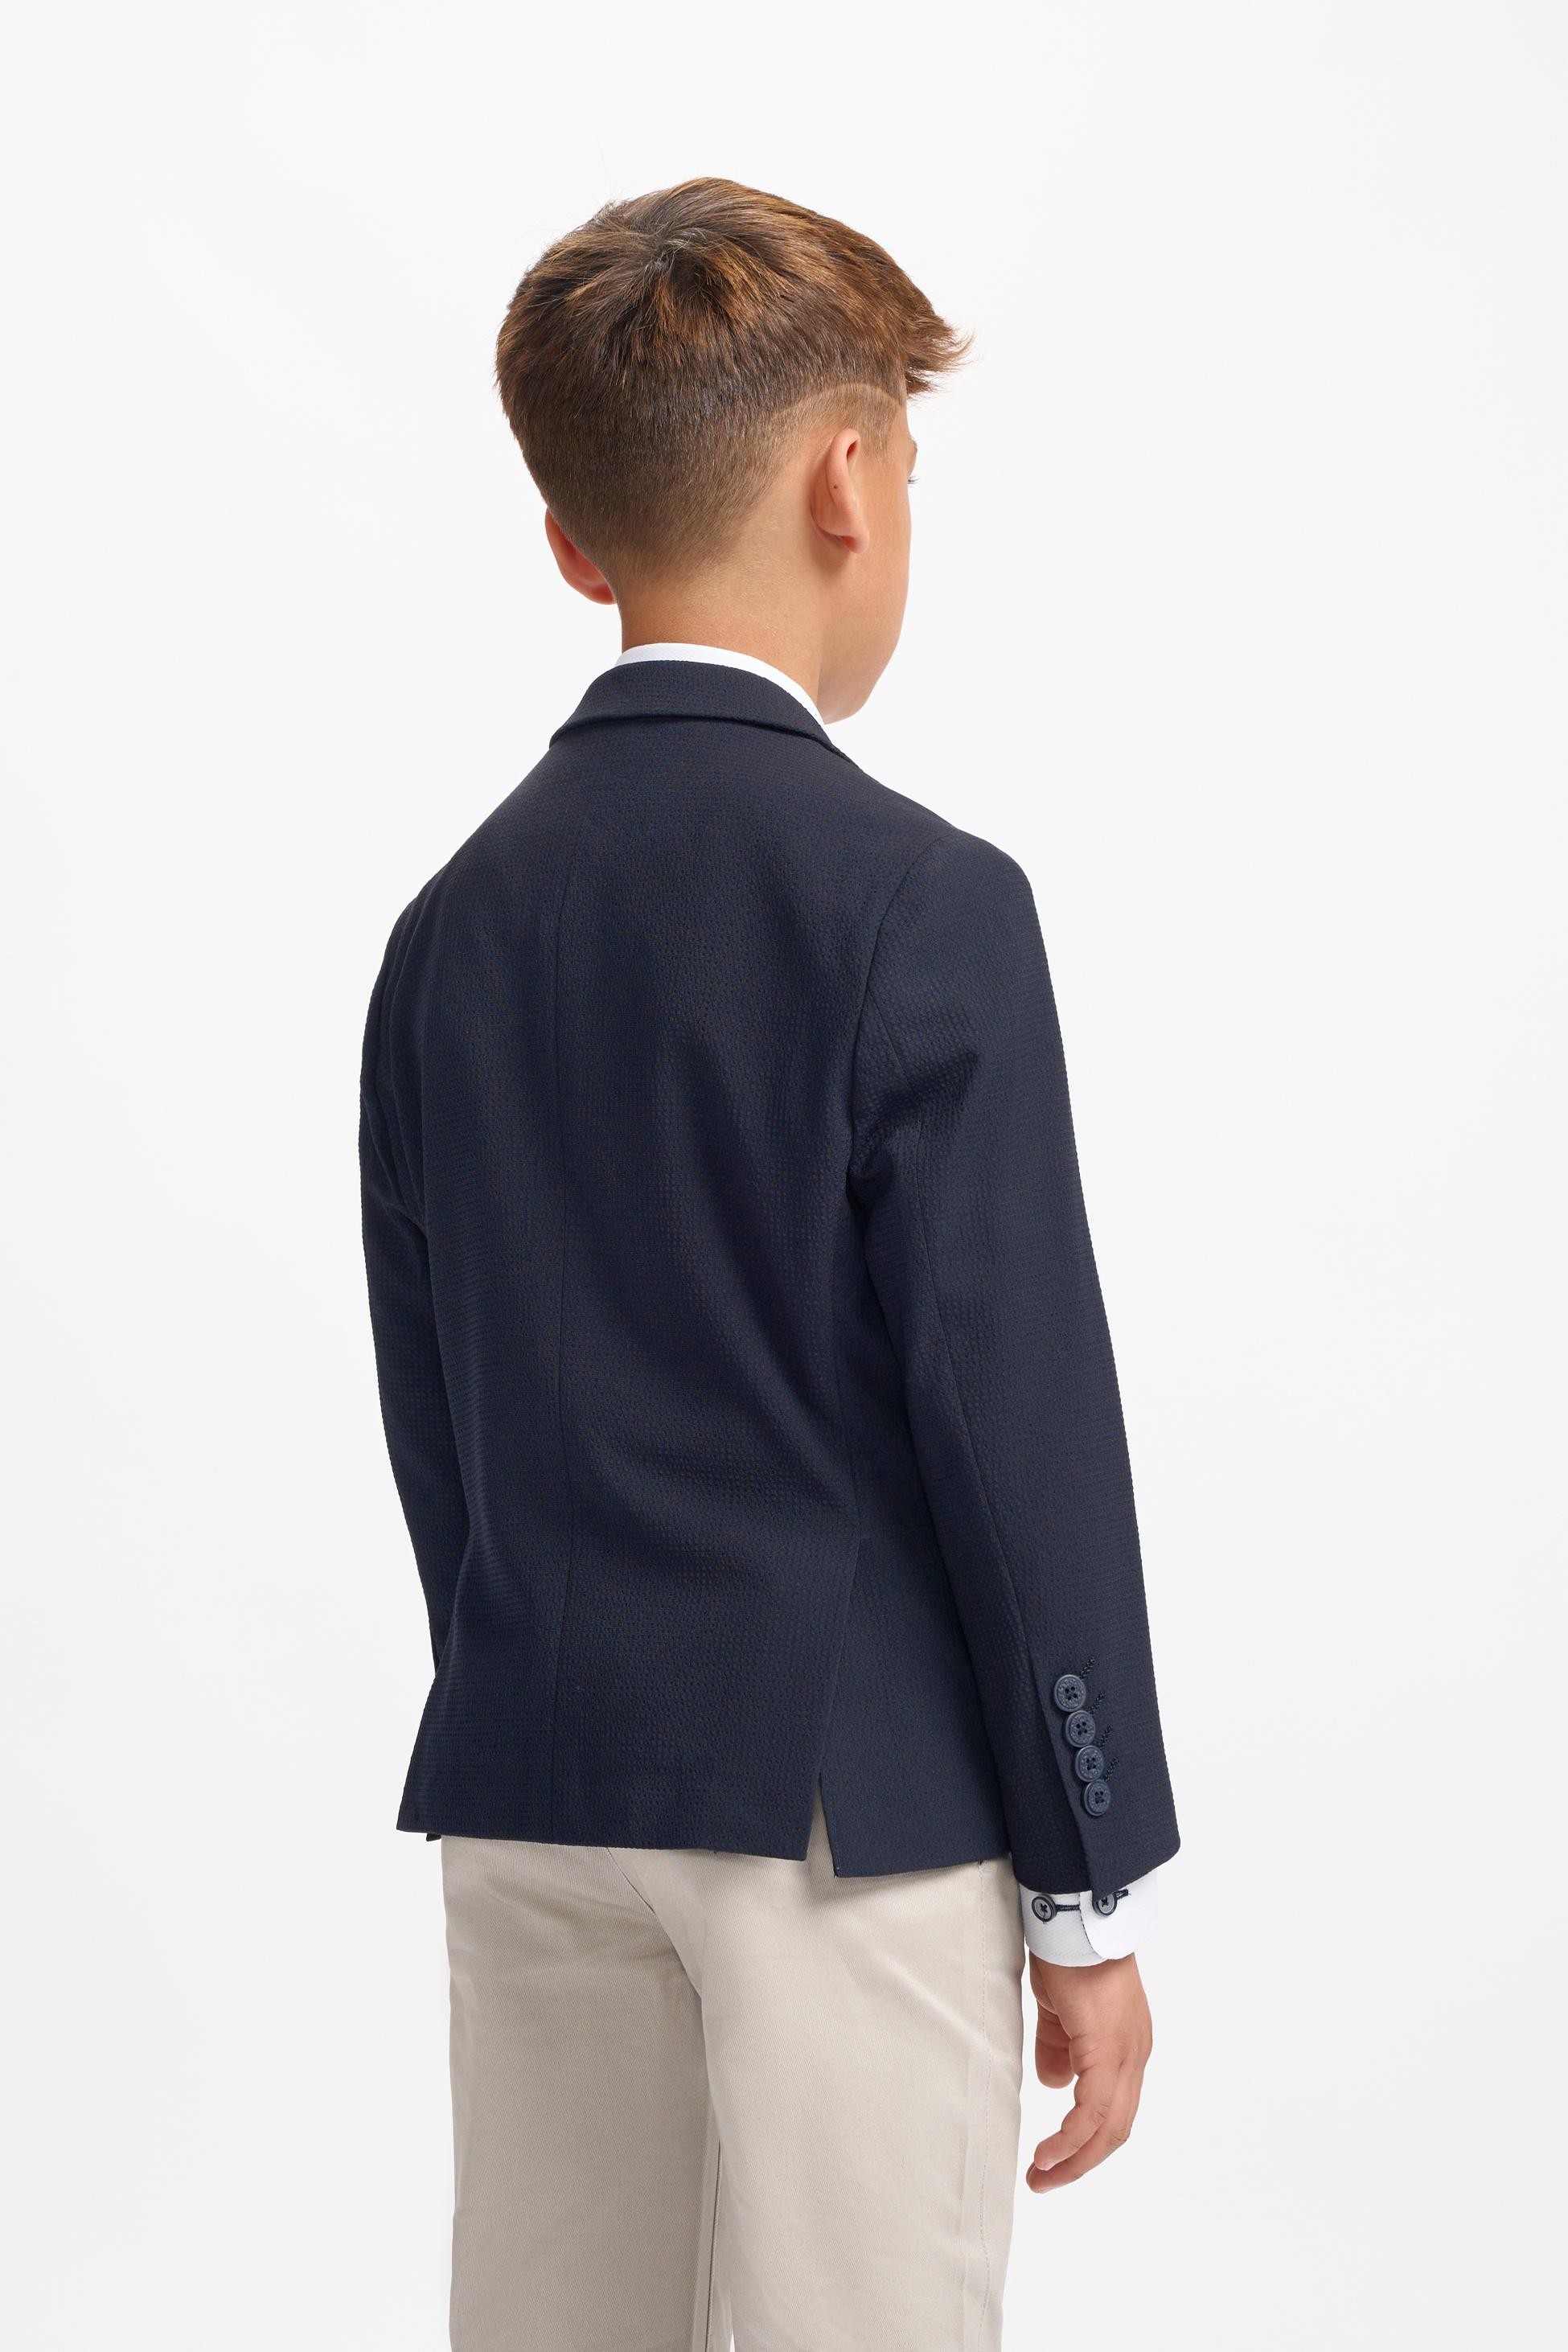 Jungen Texturierter Slim Fit Anzugjacke – SIREN - Navy blau